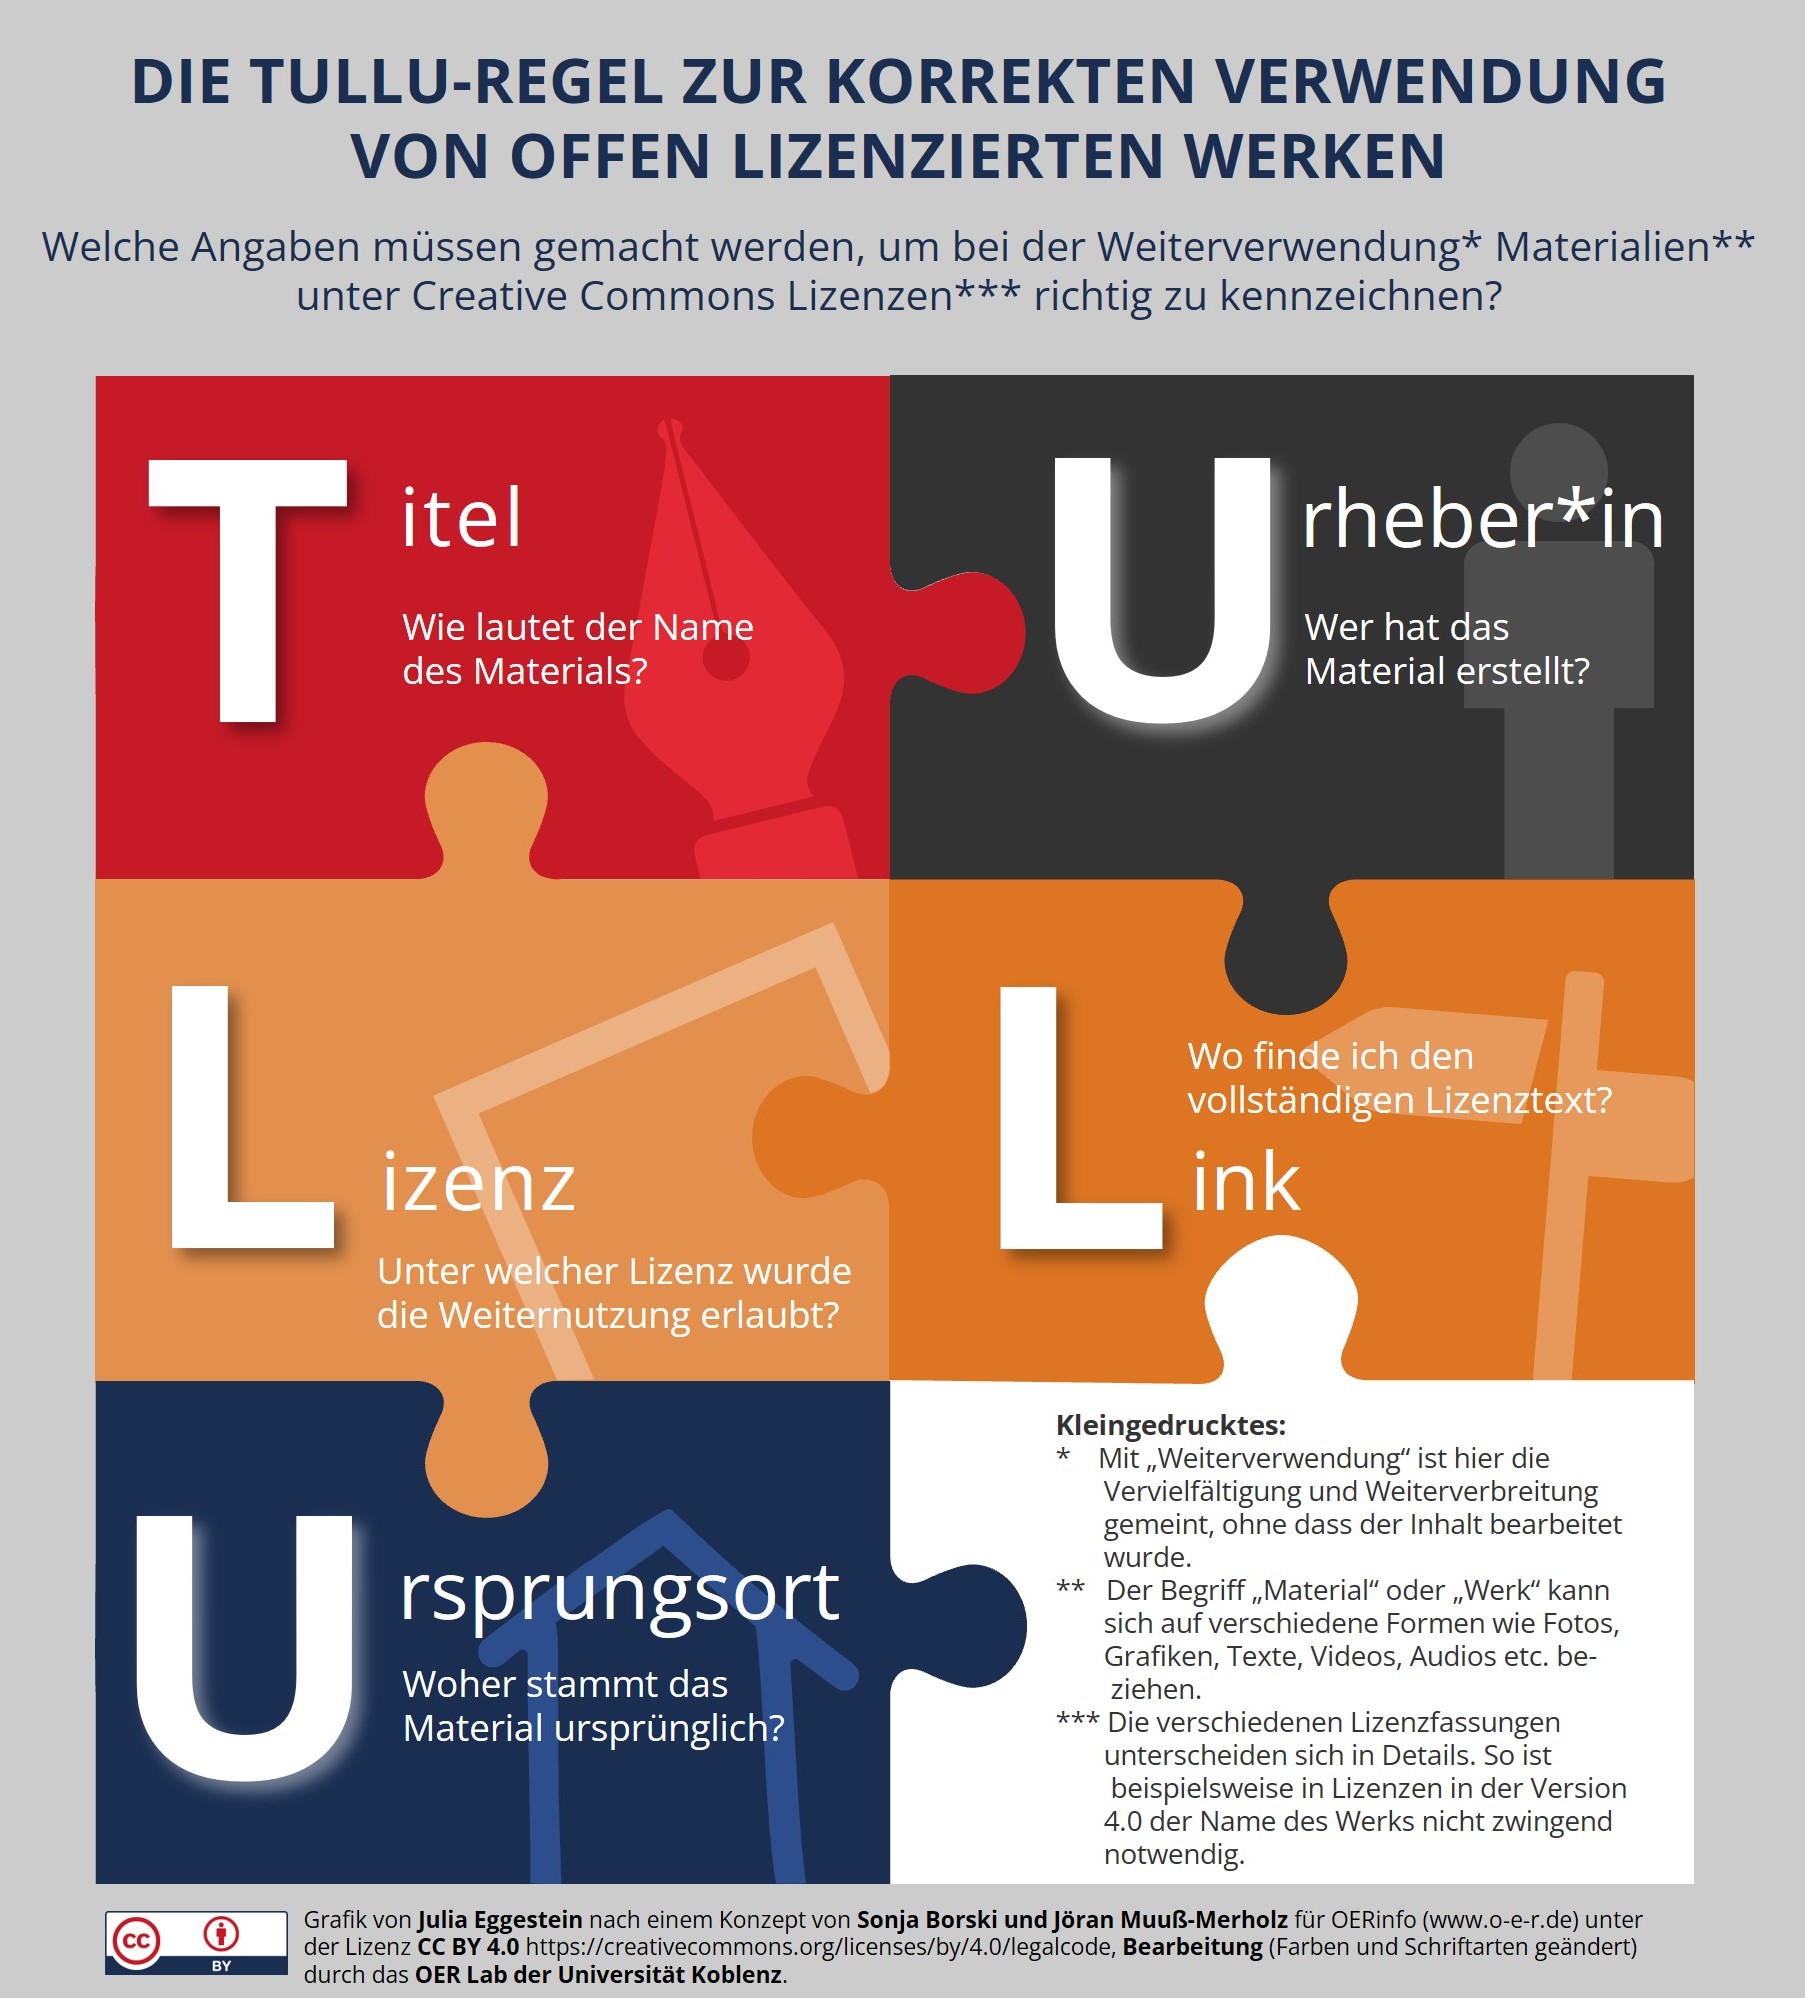 Infografik zur TULLU-Regel zur korrekten Verwendung von offen lizenzierten Werken. 